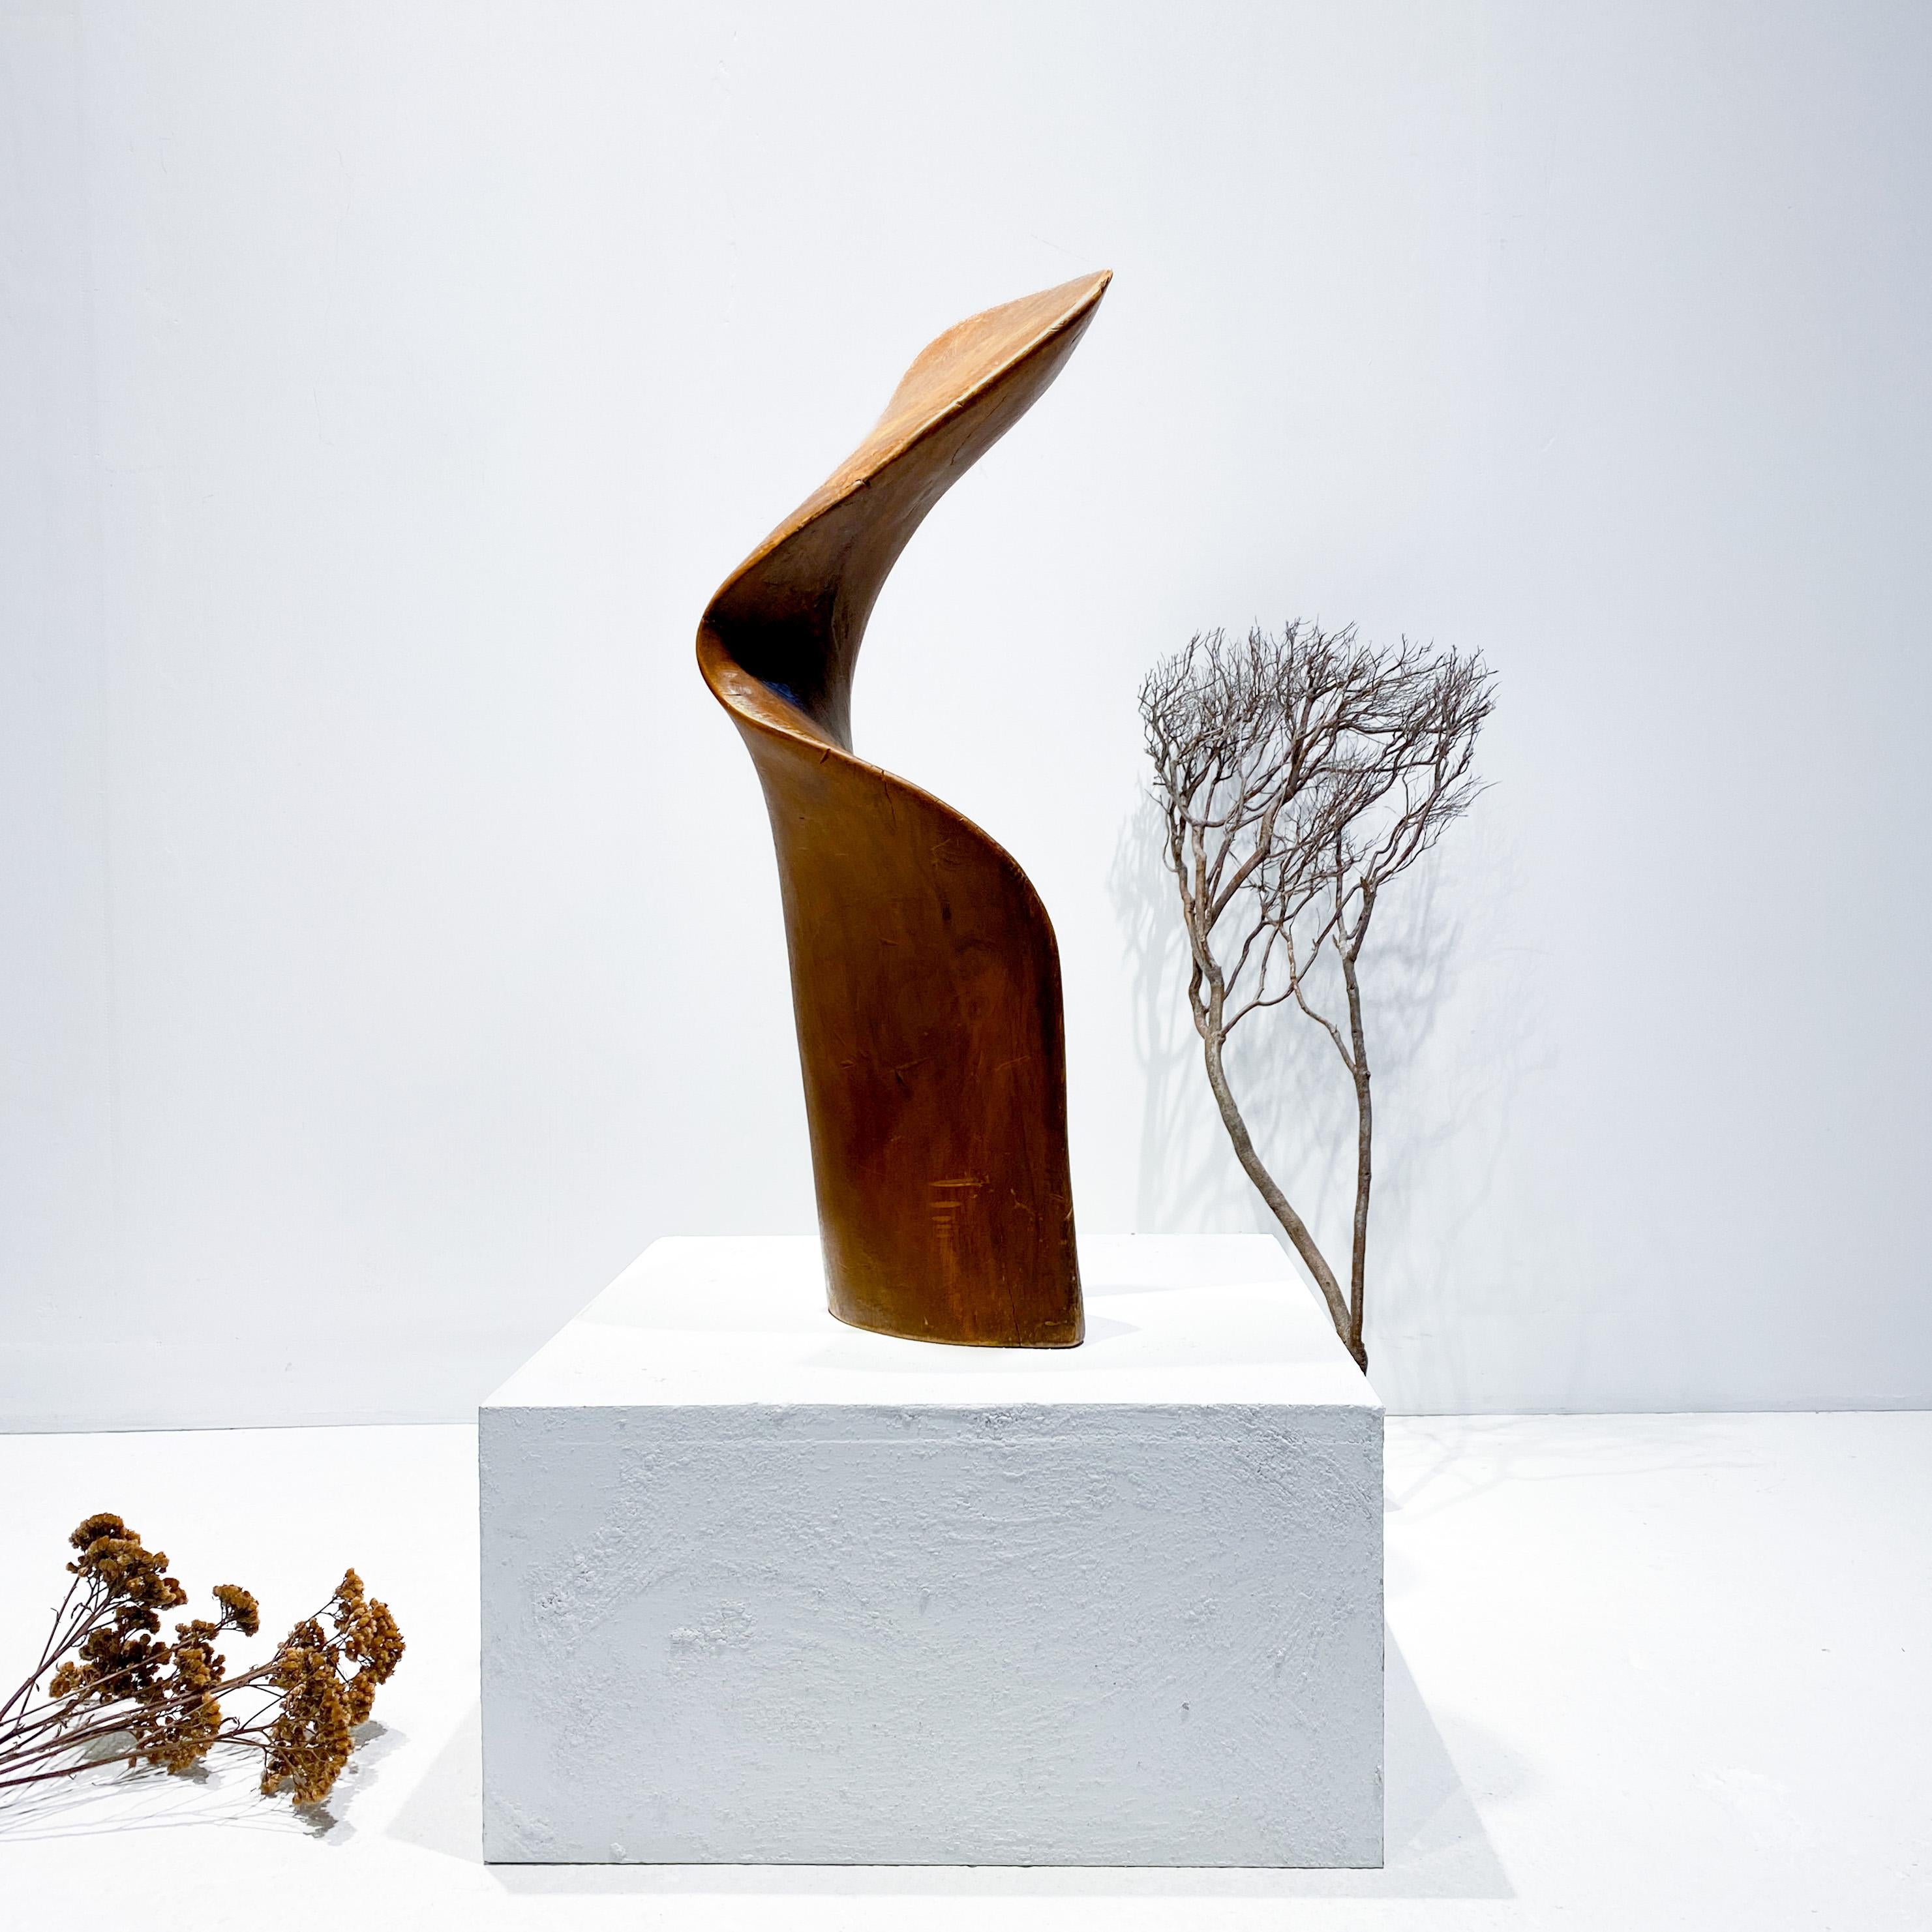 Une sculpture amorphe et sensuelle de l'artiste néerlandais Nout Visser (1944-2018), signée et datée en dessous, 1974. Forme sculpturale forte avec une courbe voluptueuse. Le bois présente une patine étonnante avec des fissures et des craquelures